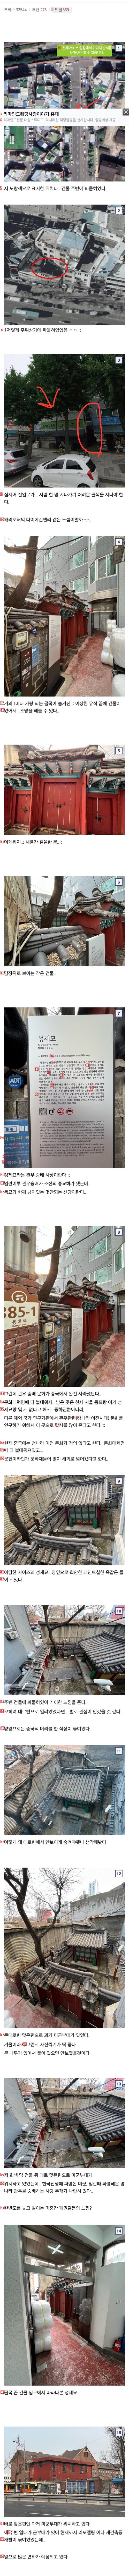 서울 도심속 이상한 유적지